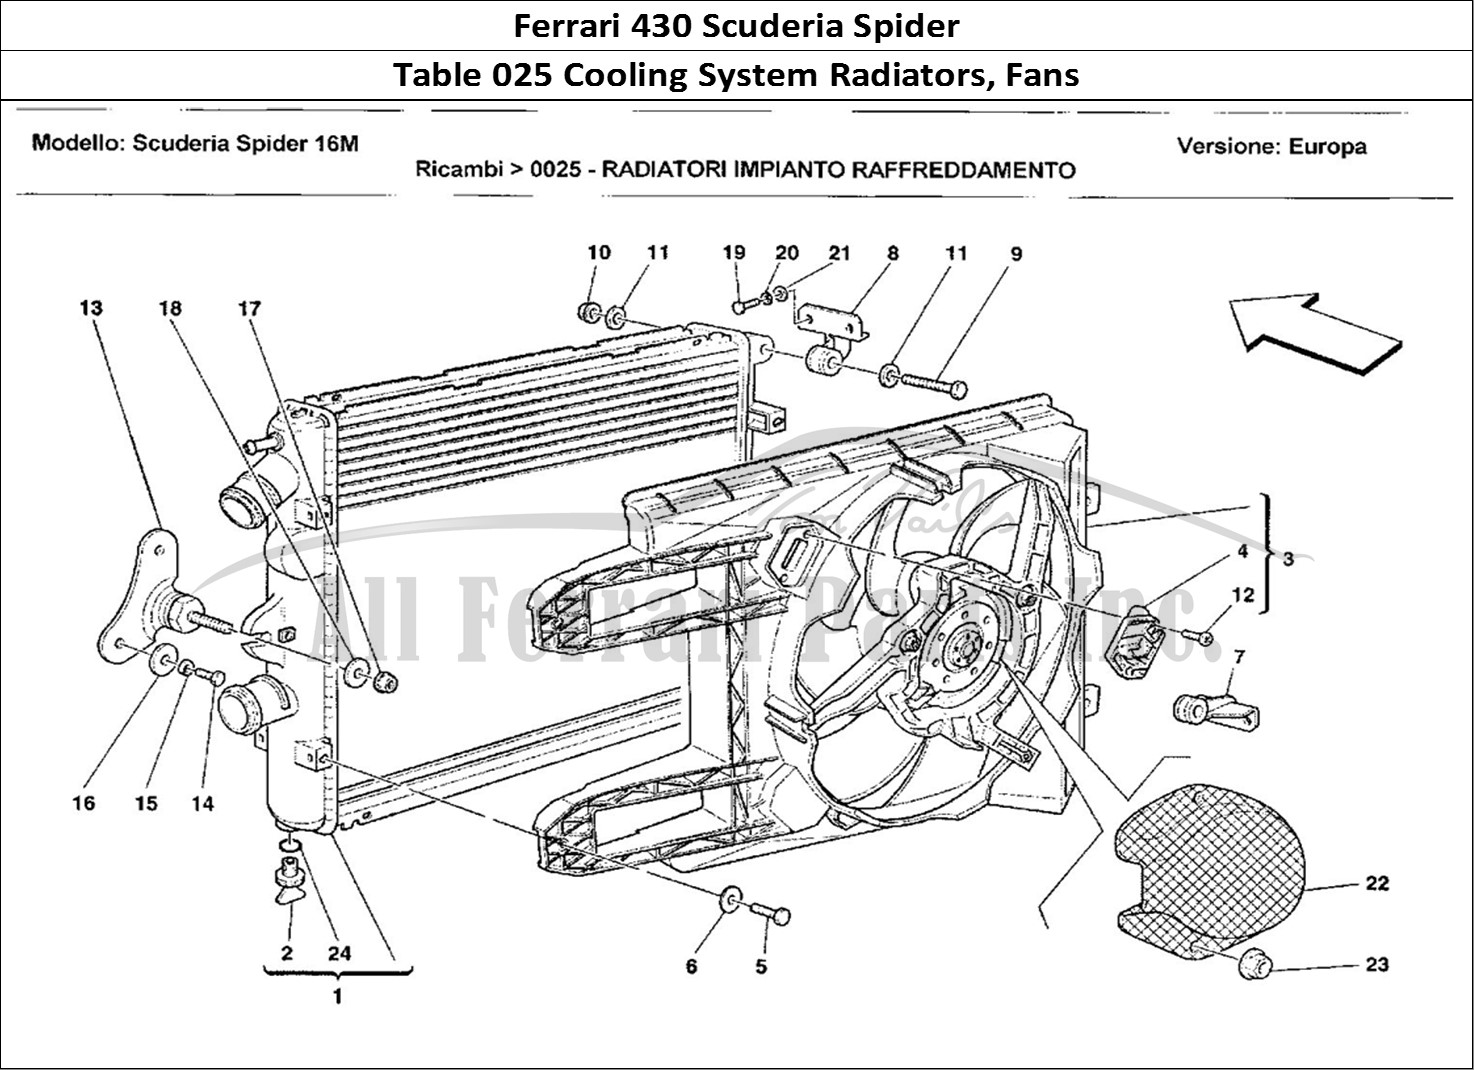 Ferrari Parts Ferrari 430 Scuderia Spider 16M Page 025 Radiatori Impianto Raffre